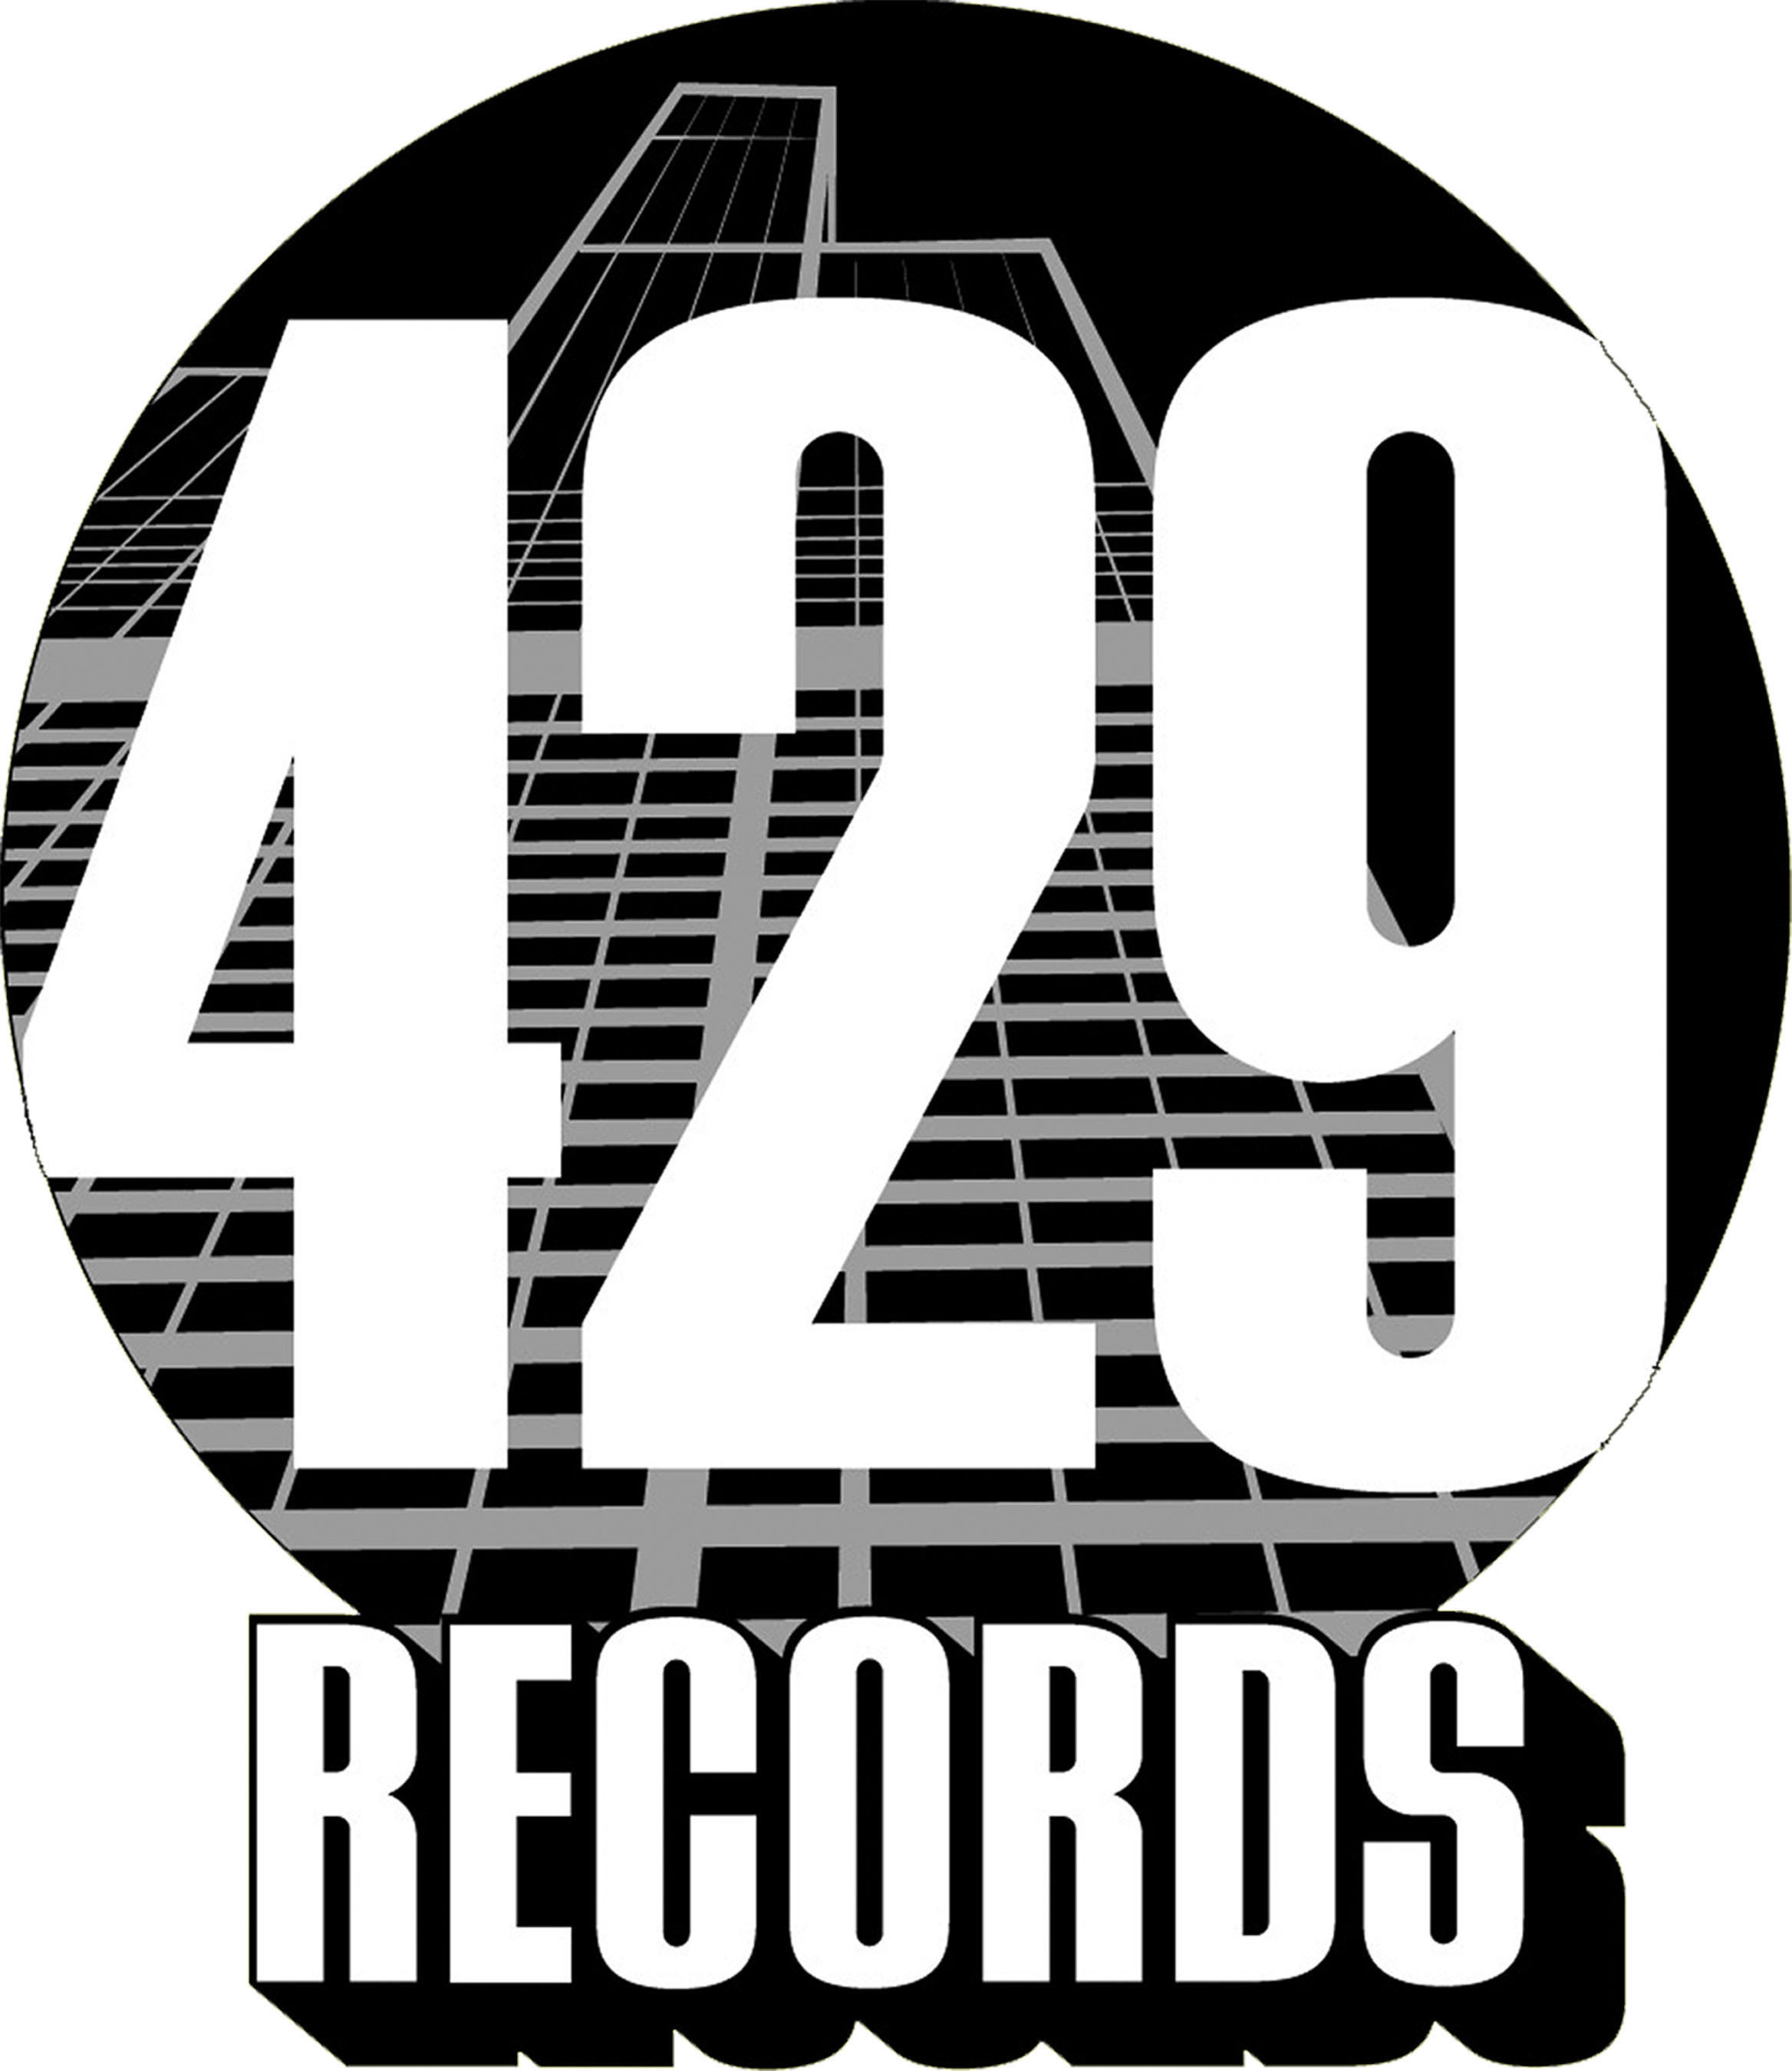 429 Records logo.